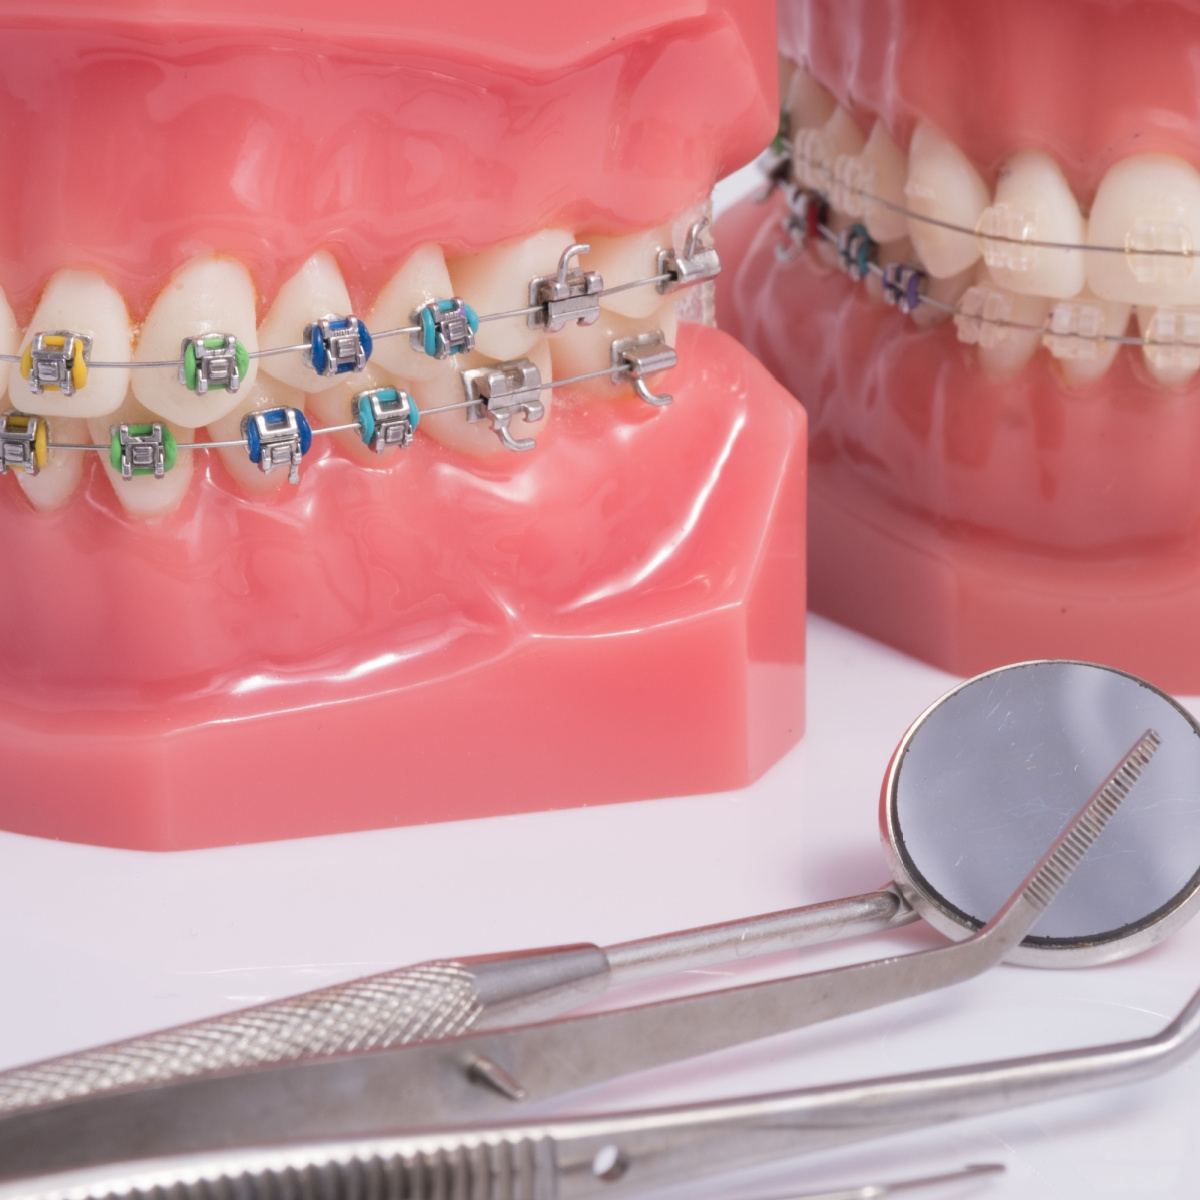 Ceramic vs metal braces